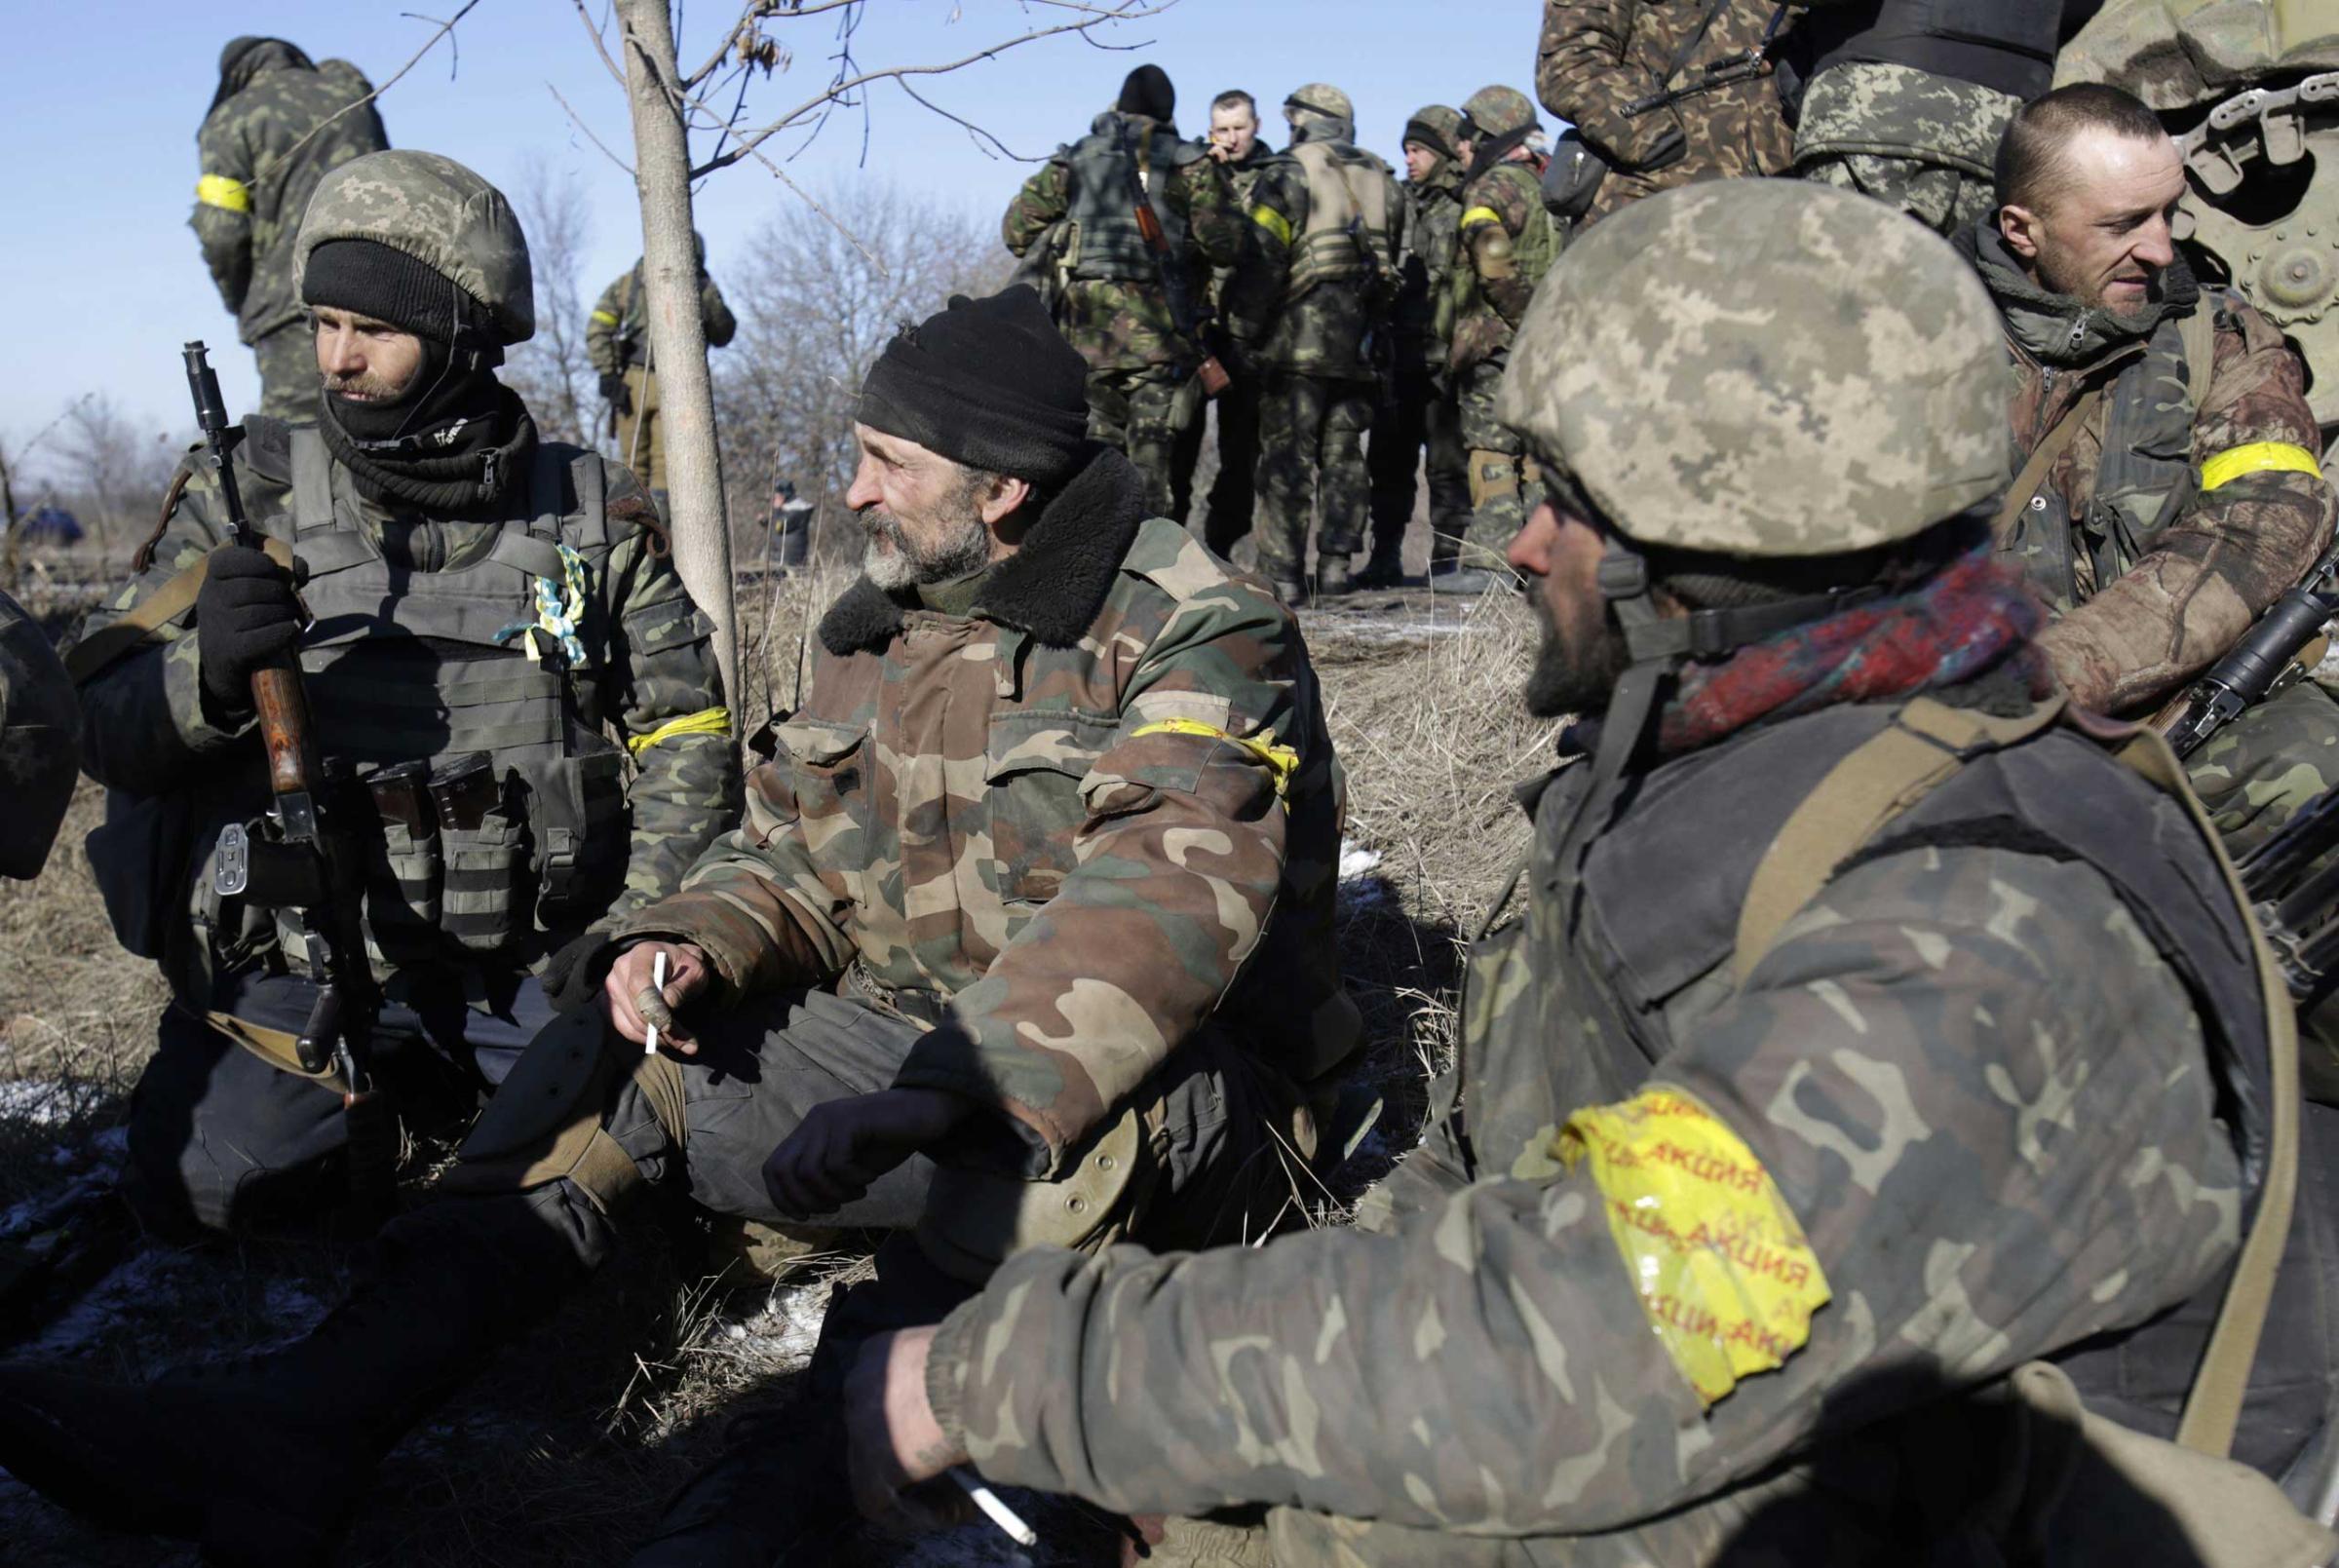 Ukrainian soldiers rest near Artemivsk after leaving Debaltseve in the Donetsk region on Feb. 18, 2015.